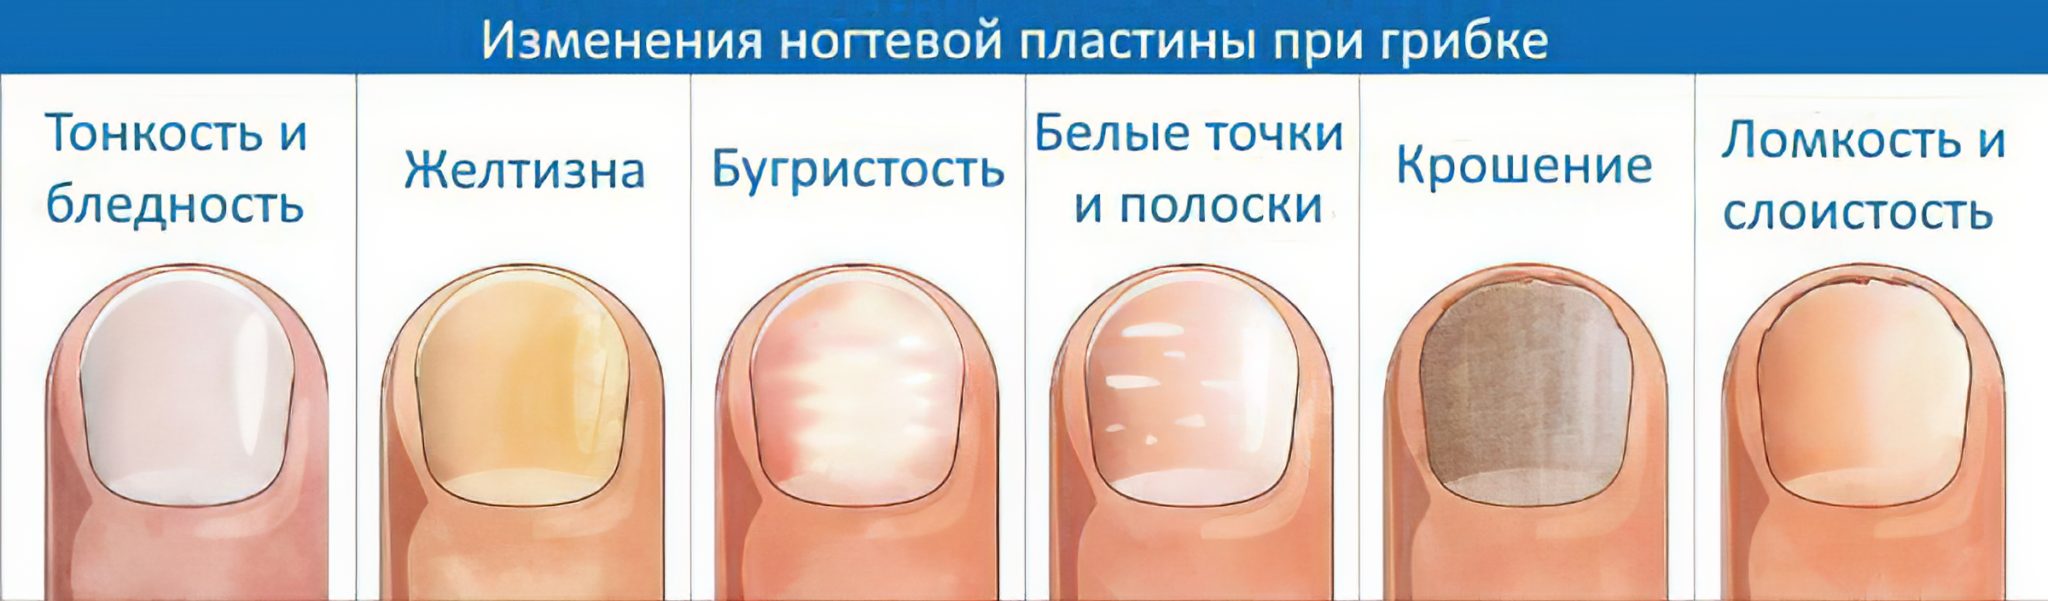 Темные пятна на ногтях - основные причины и лечение